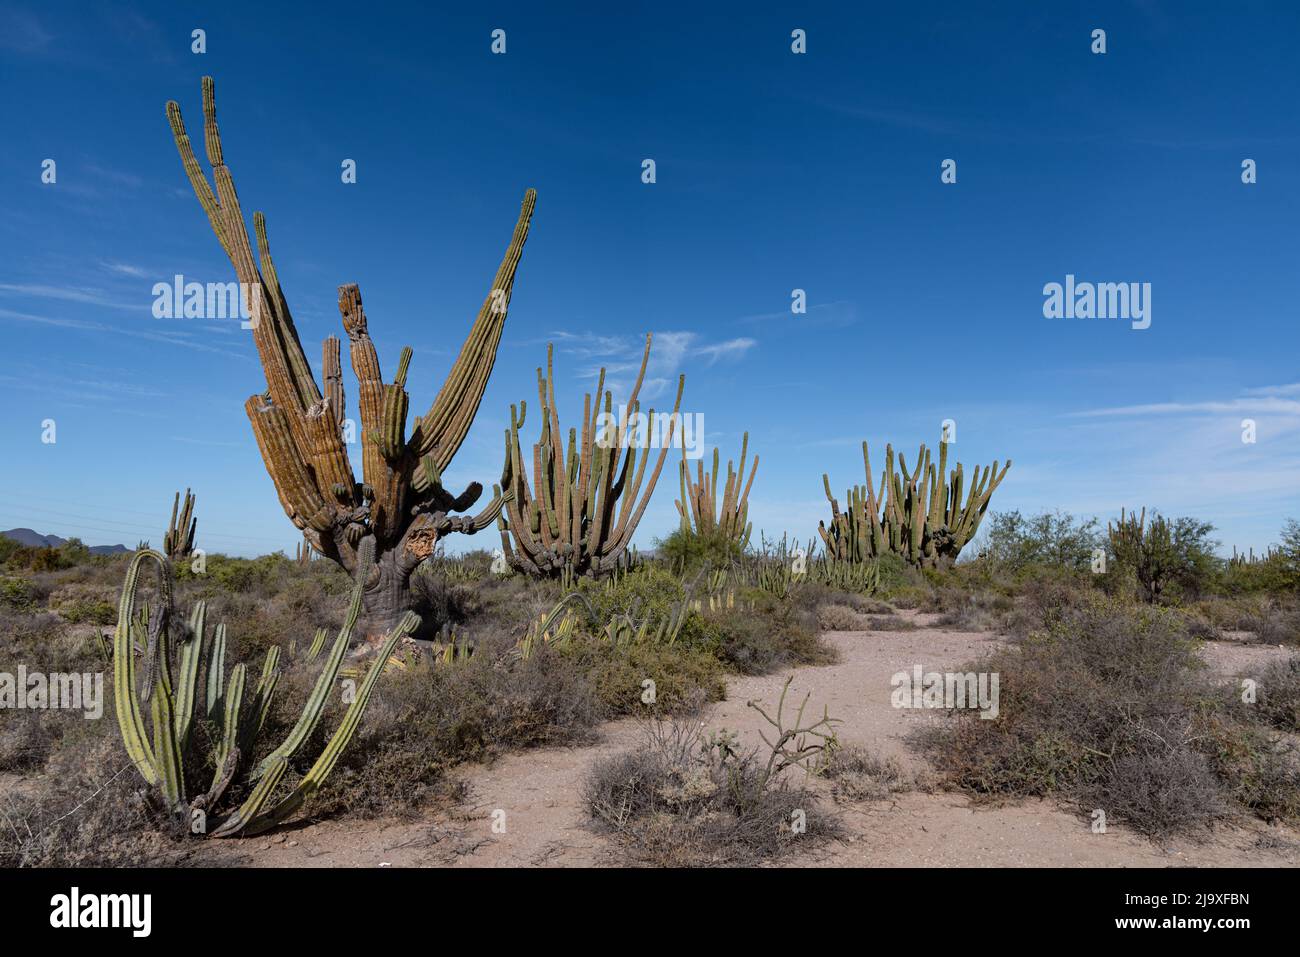 Il gigante messicano Cardon nel deserto di sonora, nel Messico settentrionale. Foto Stock